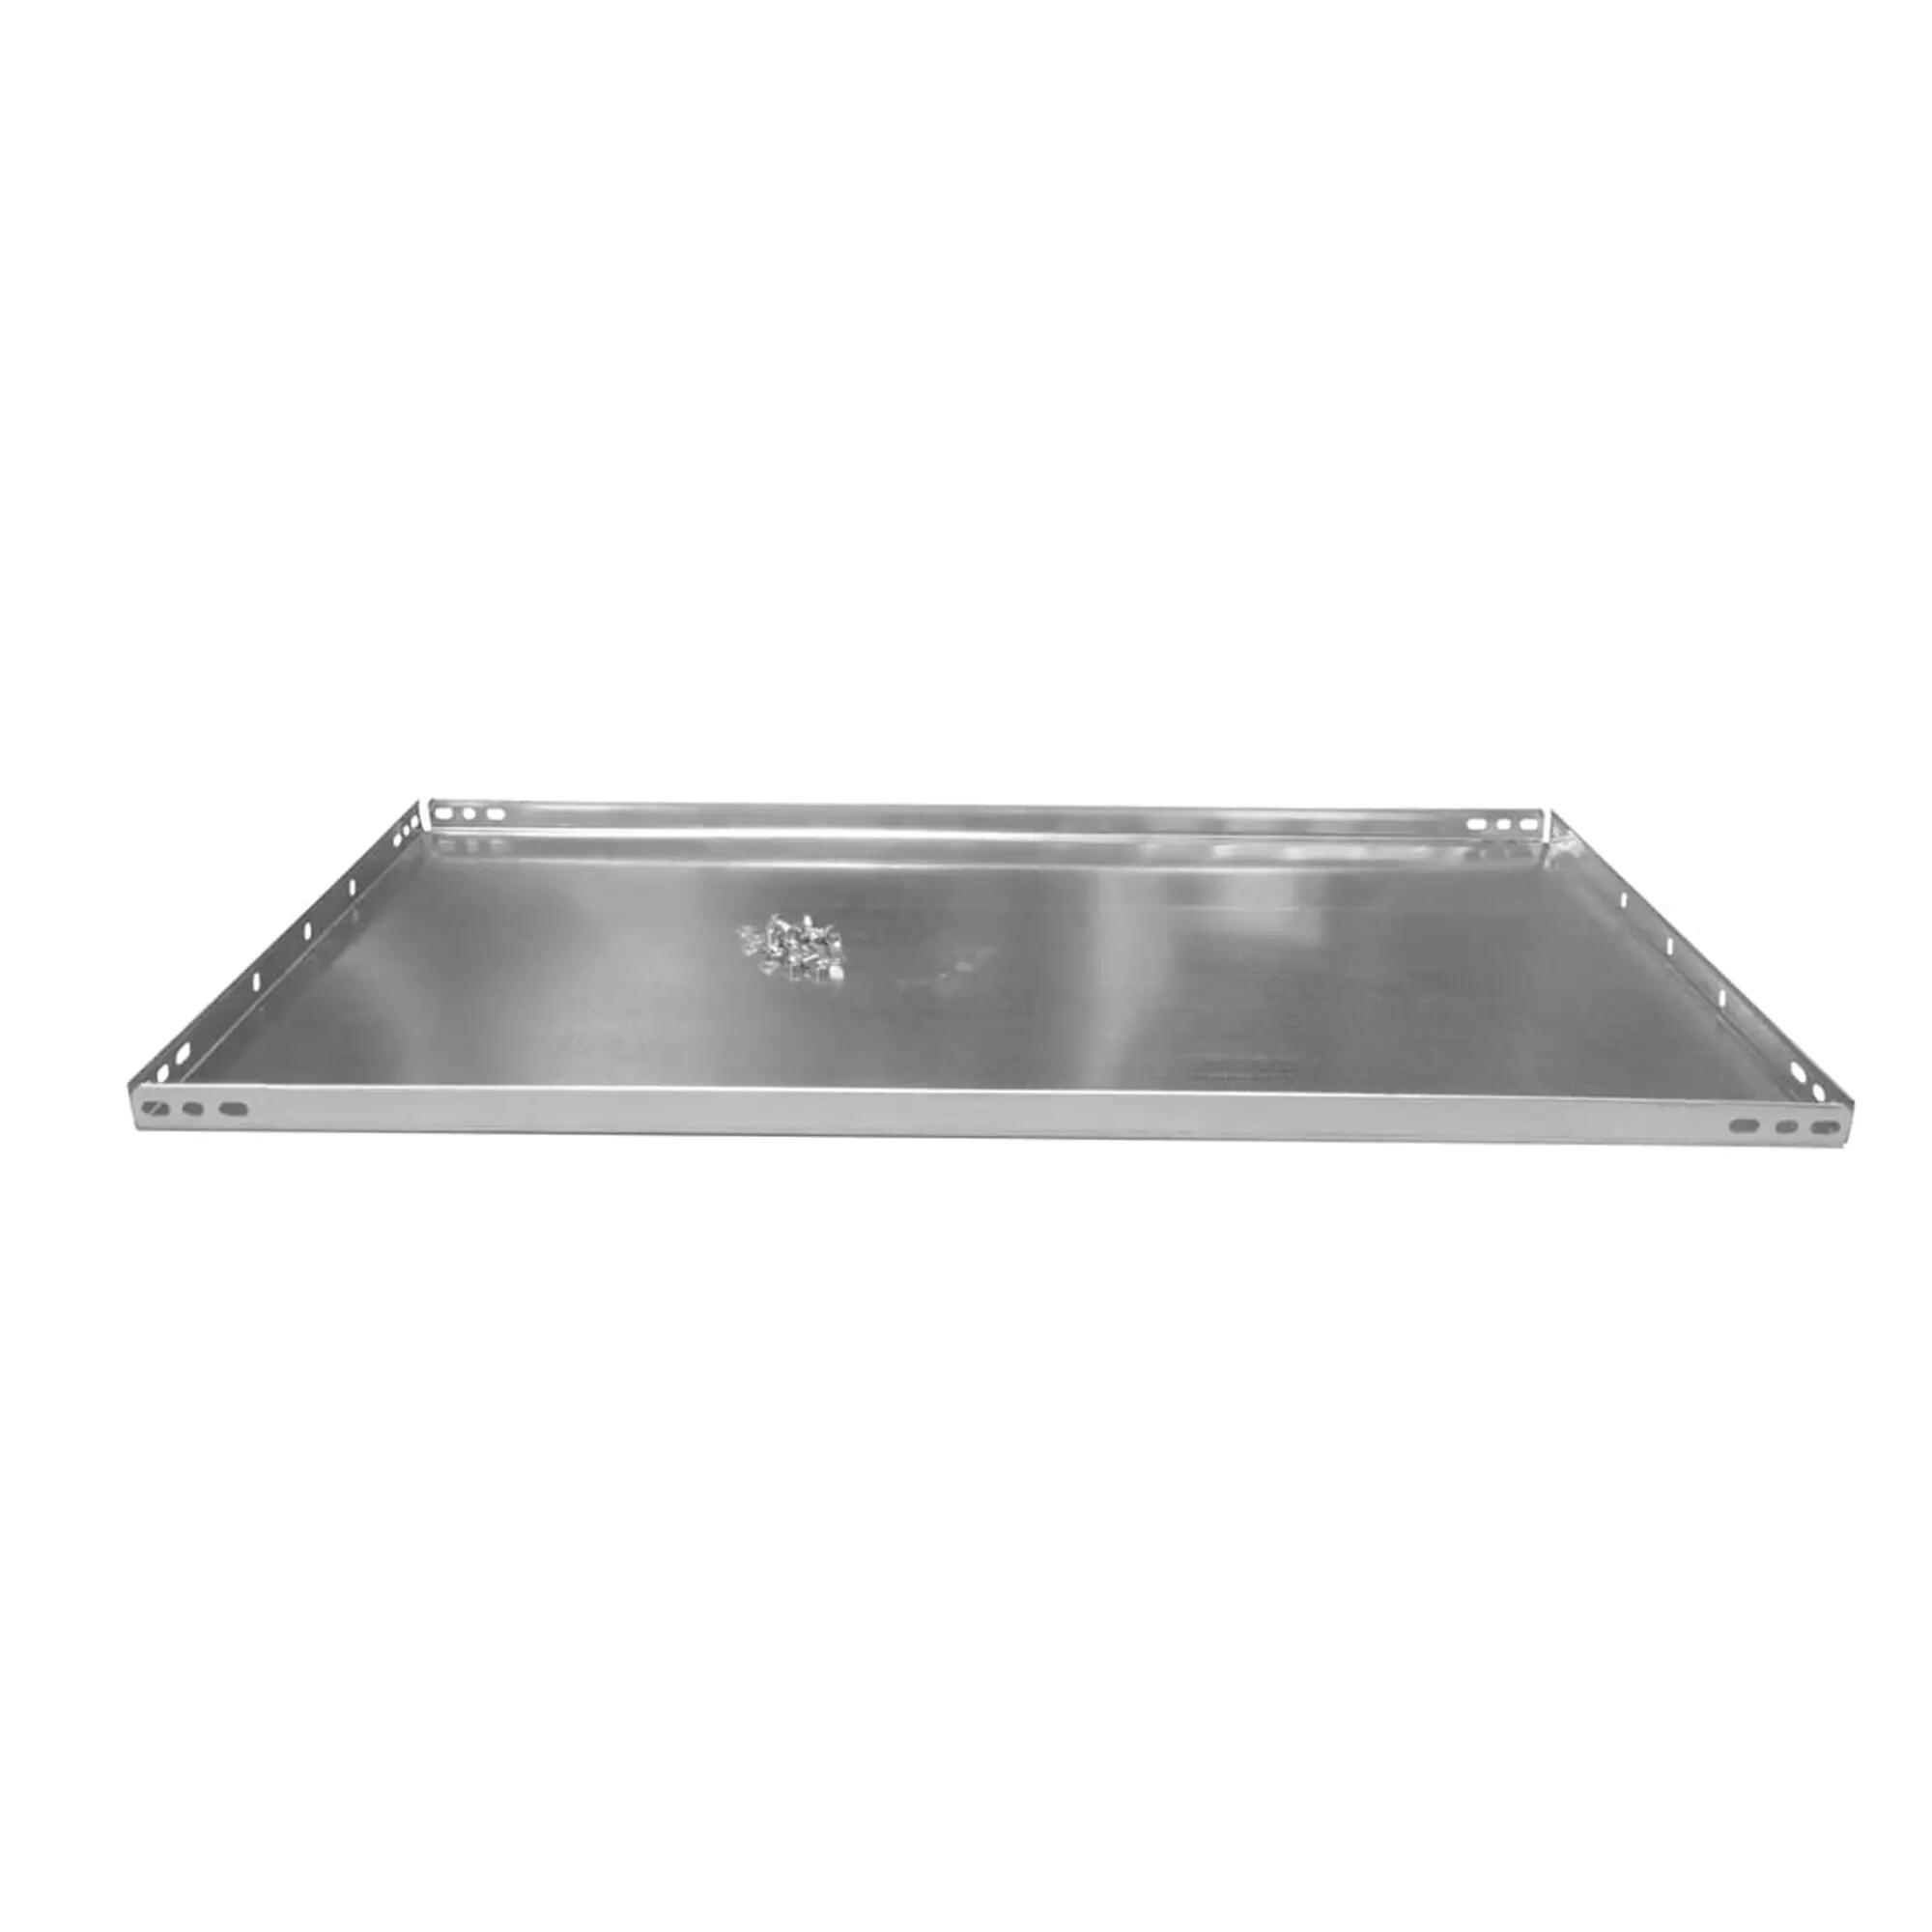 Balda recta para sistema de estantes de acero gris de 100x60cm